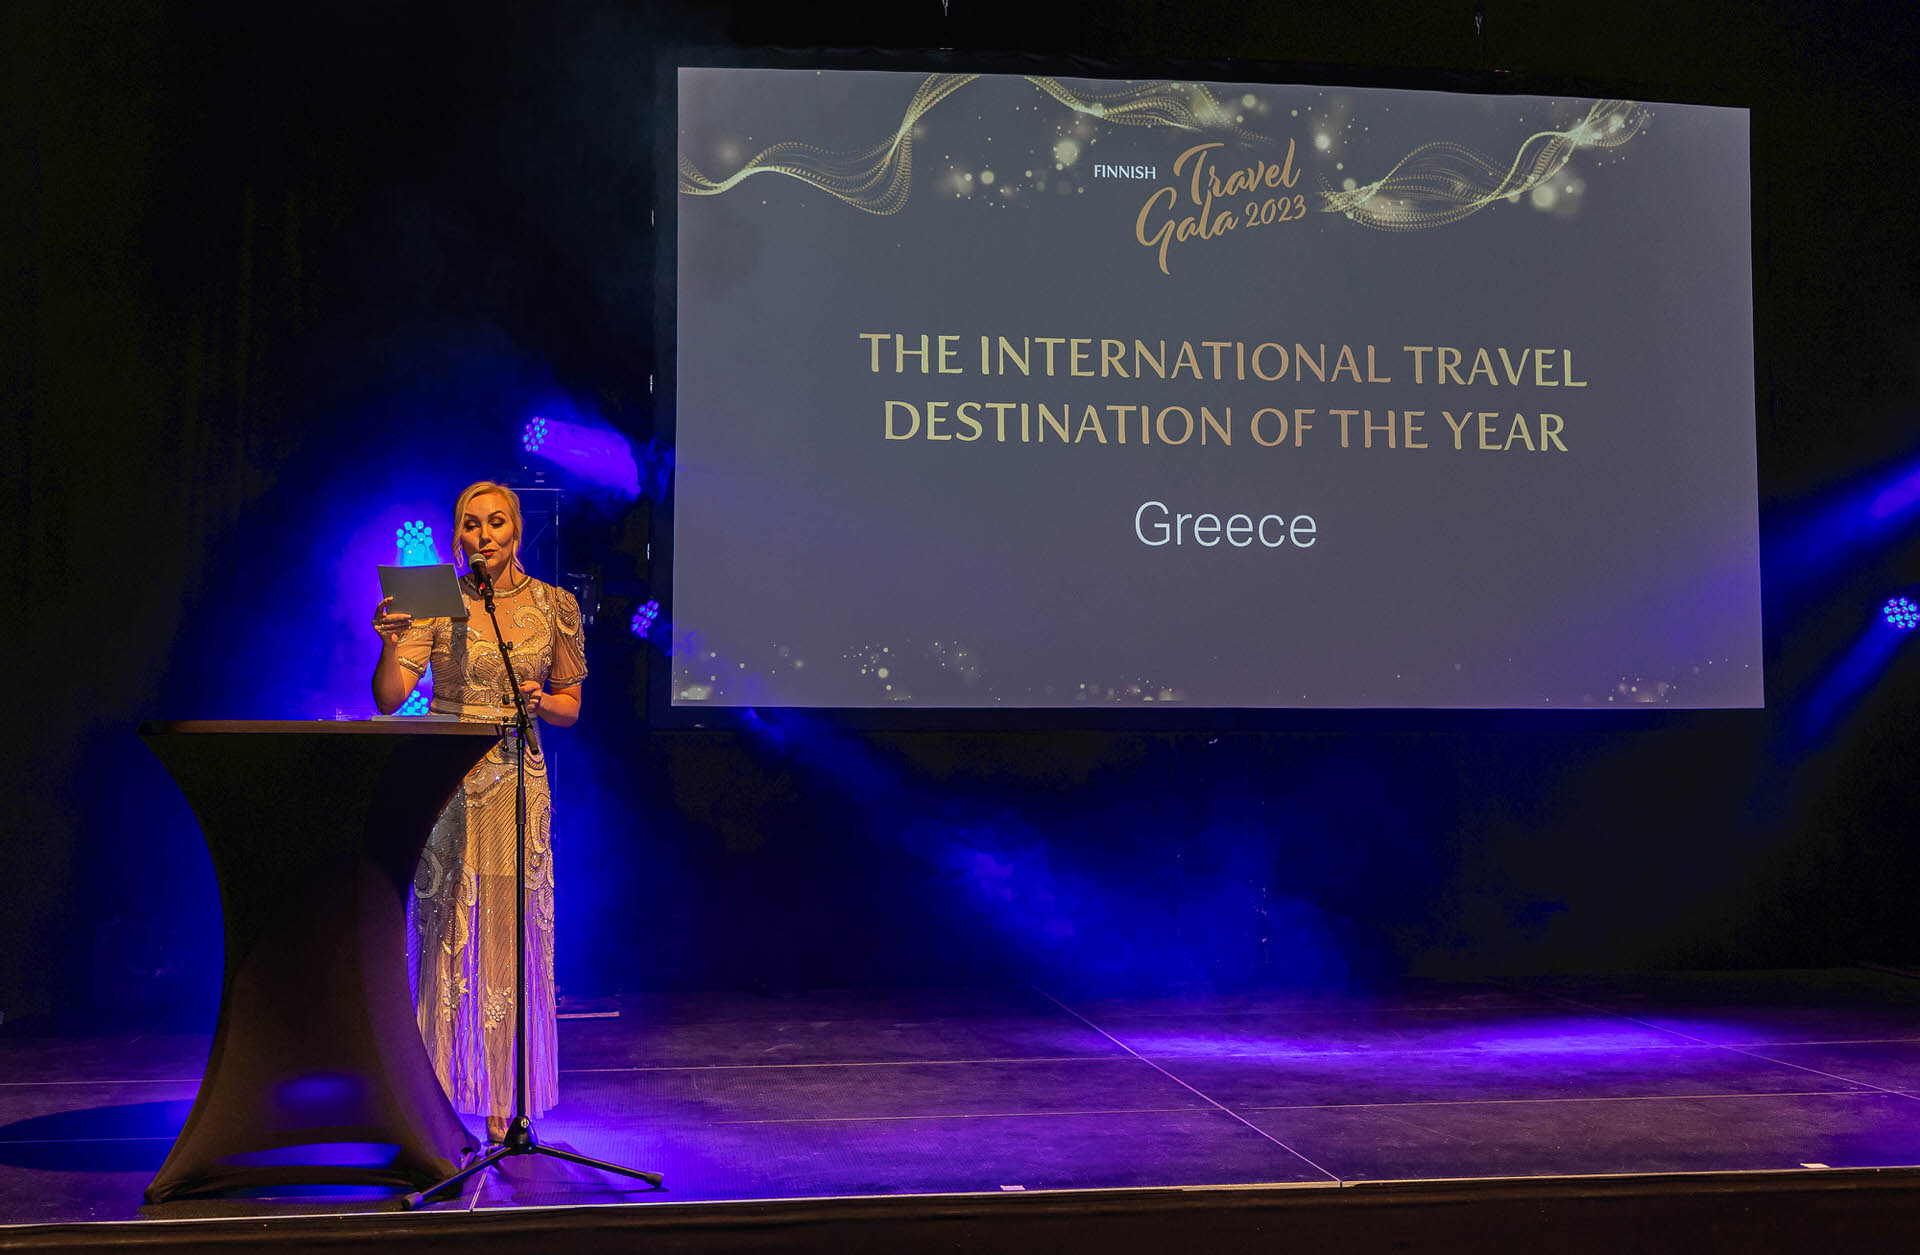 Ταξιδιωτικός προορισμός της χρονιάς παγκοσμίως αναδείχθηκε η Ελλάδα στην Φιλανδία για το 2023